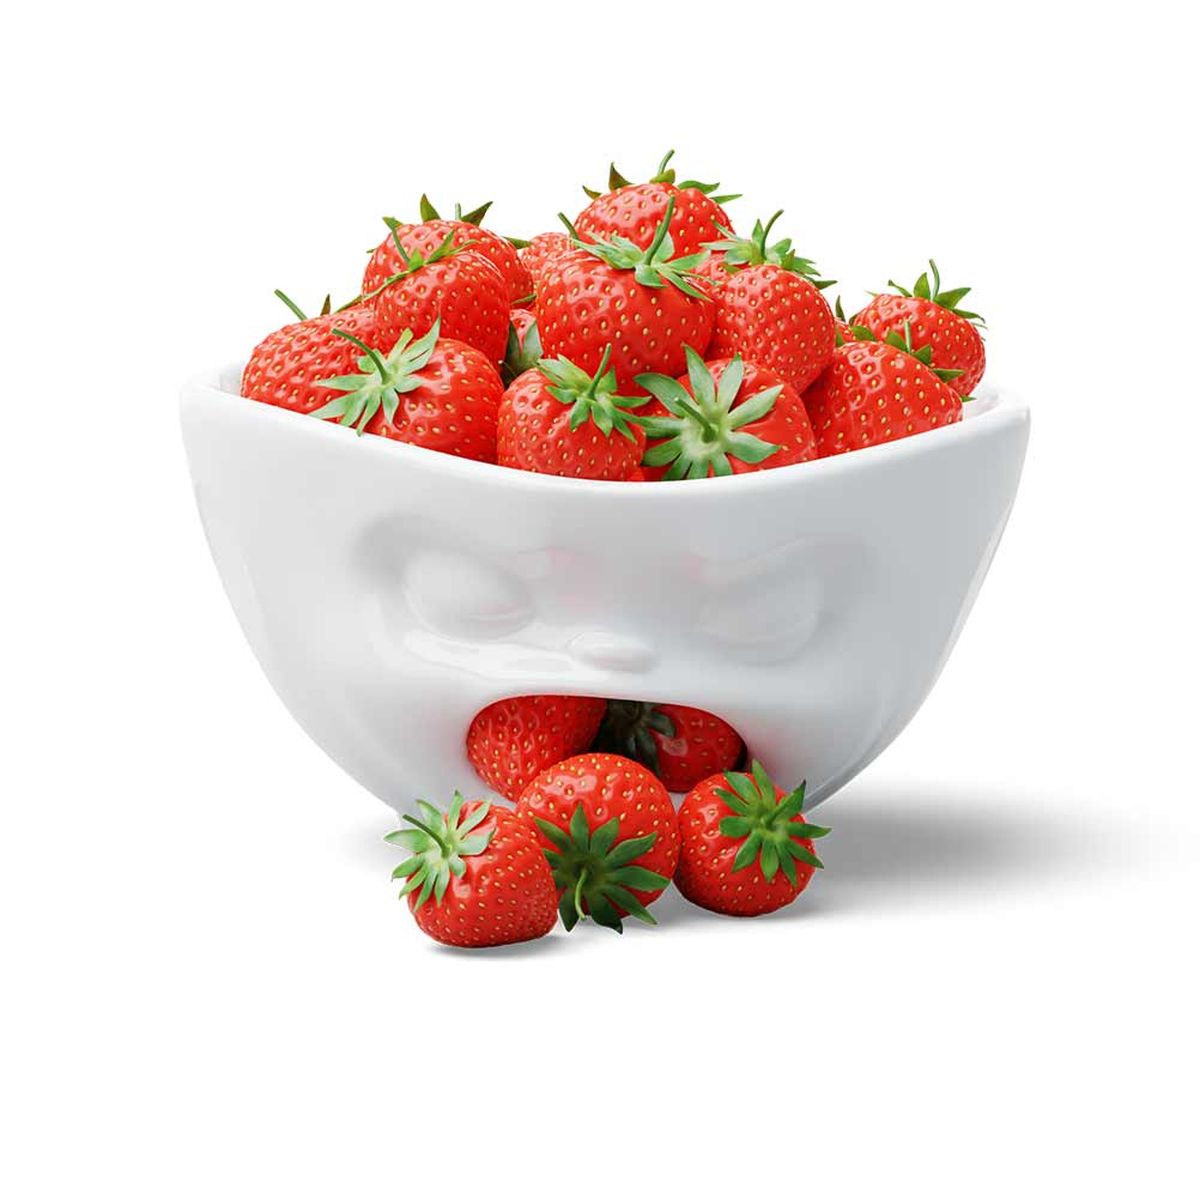 XL Mood Dispenser Porcelain Bowl by Tassen 1000 ml - Barfing